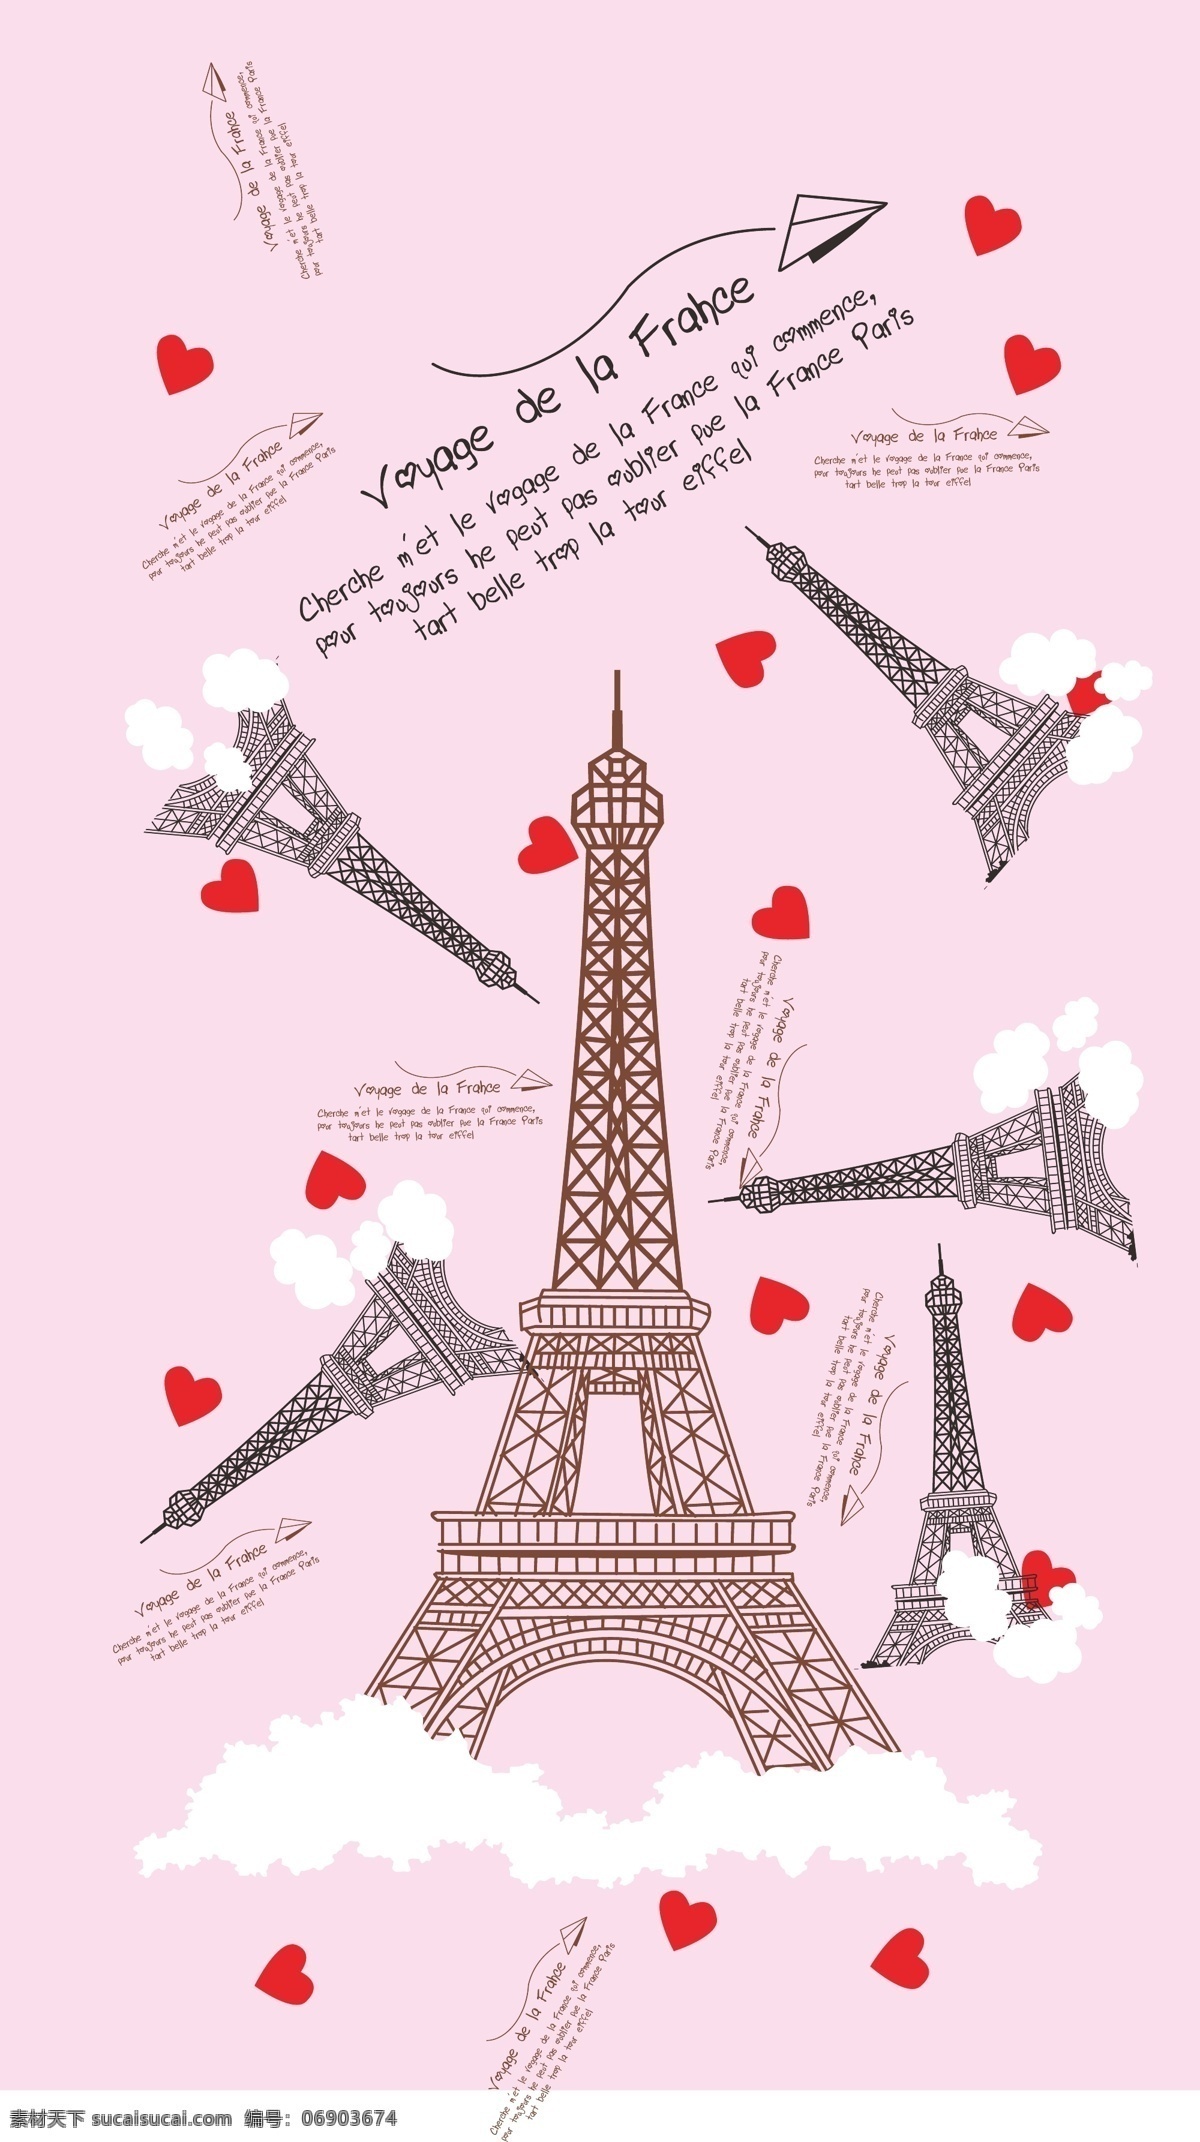 巴黎 铁塔 埃菲尔铁塔 巴黎铁塔 埃菲尔 粉色铁塔 粉色巴黎 粉色巴黎铁塔 粉色埃菲尔 自然景观 建筑园林